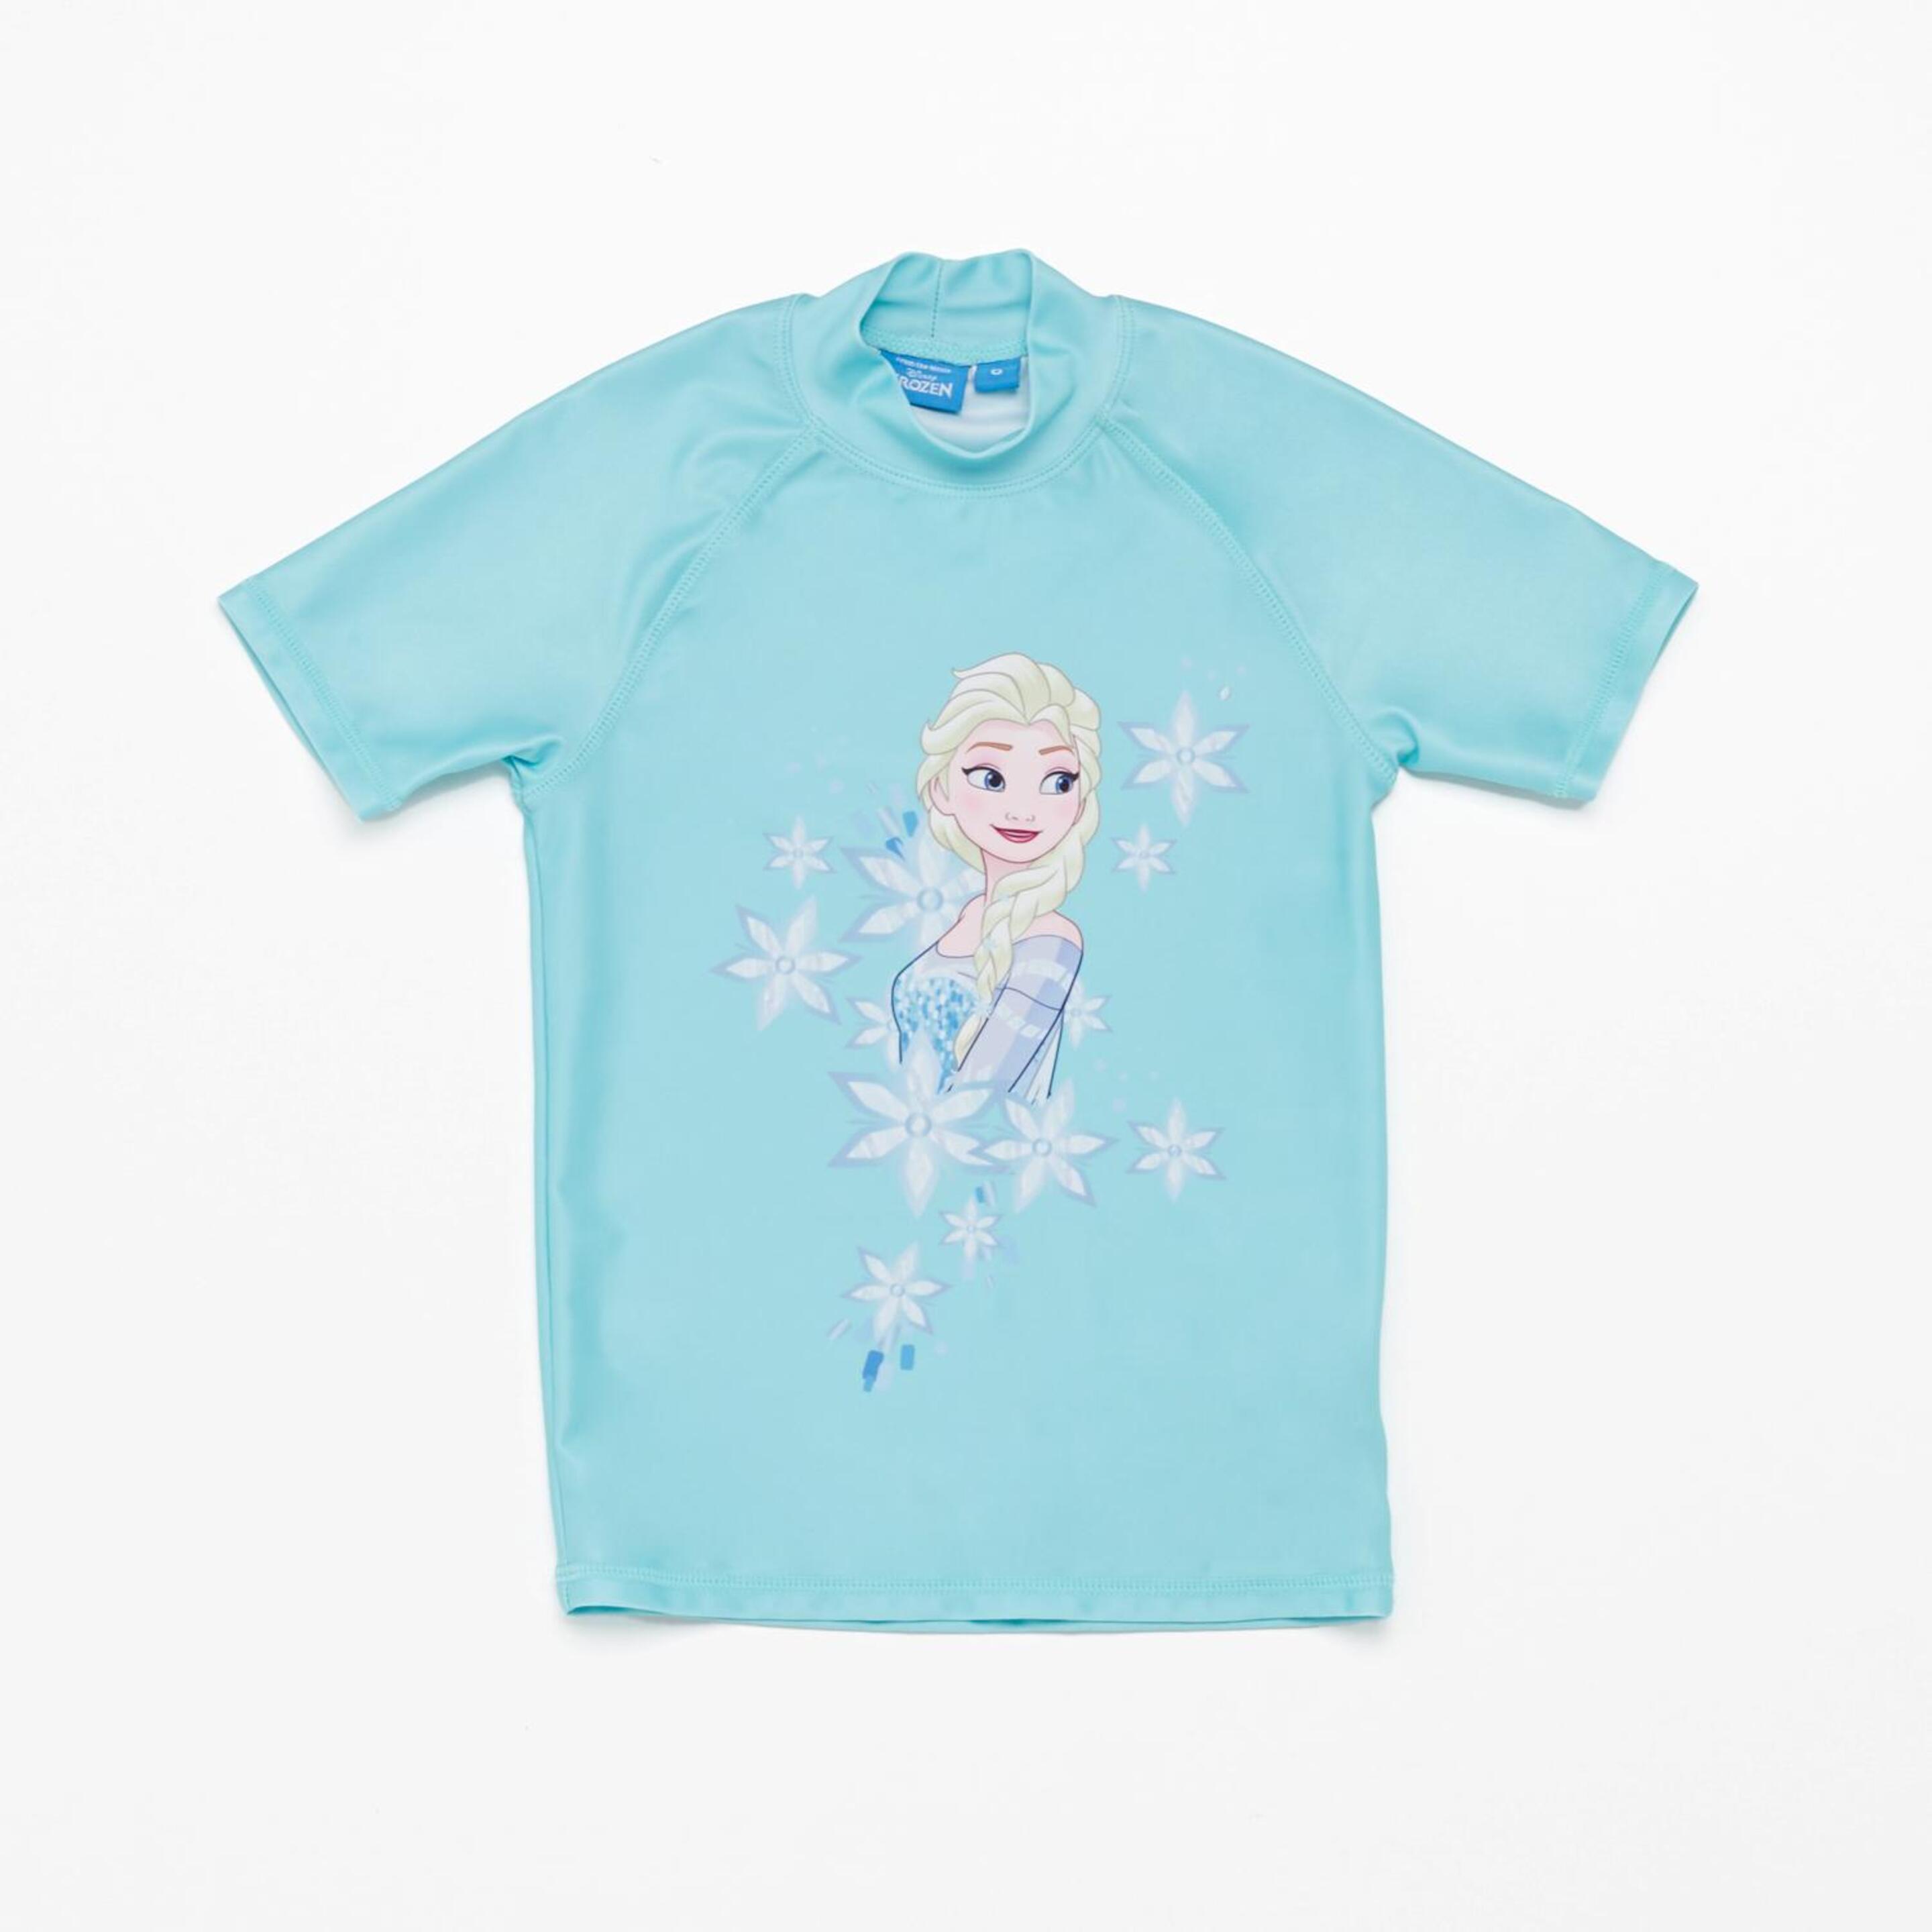 Camiseta Frozen